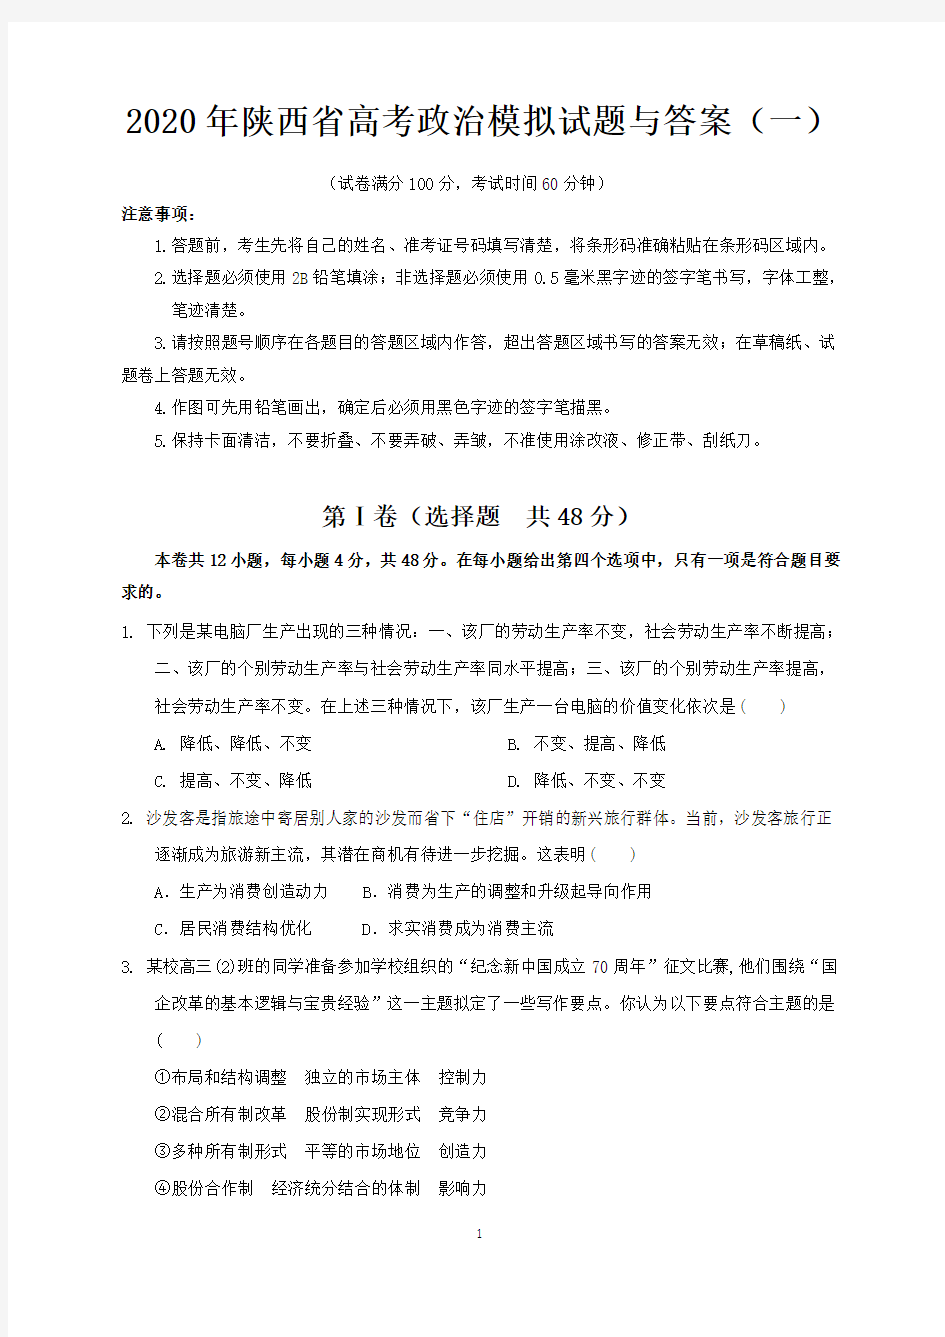 2020年陕西省高考政治模拟试题与答案 (一)